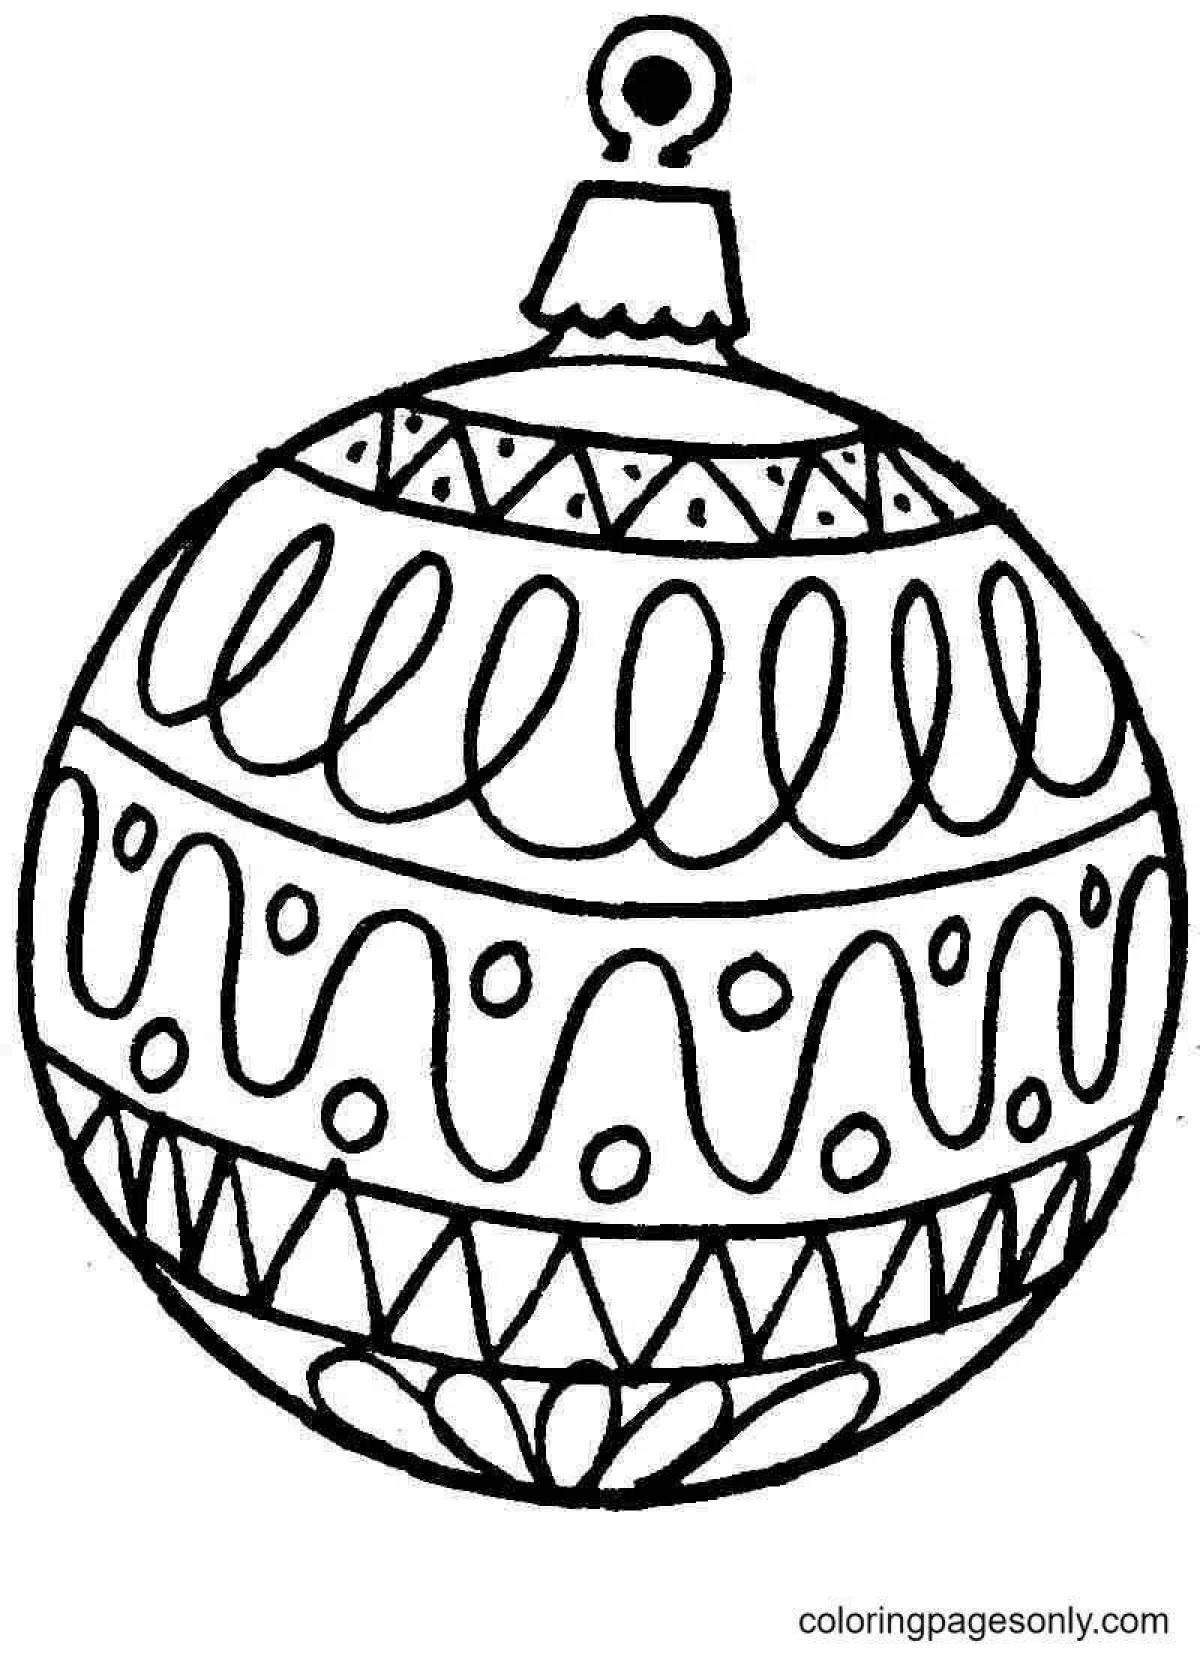 Whimsical Christmas ball coloring for kids